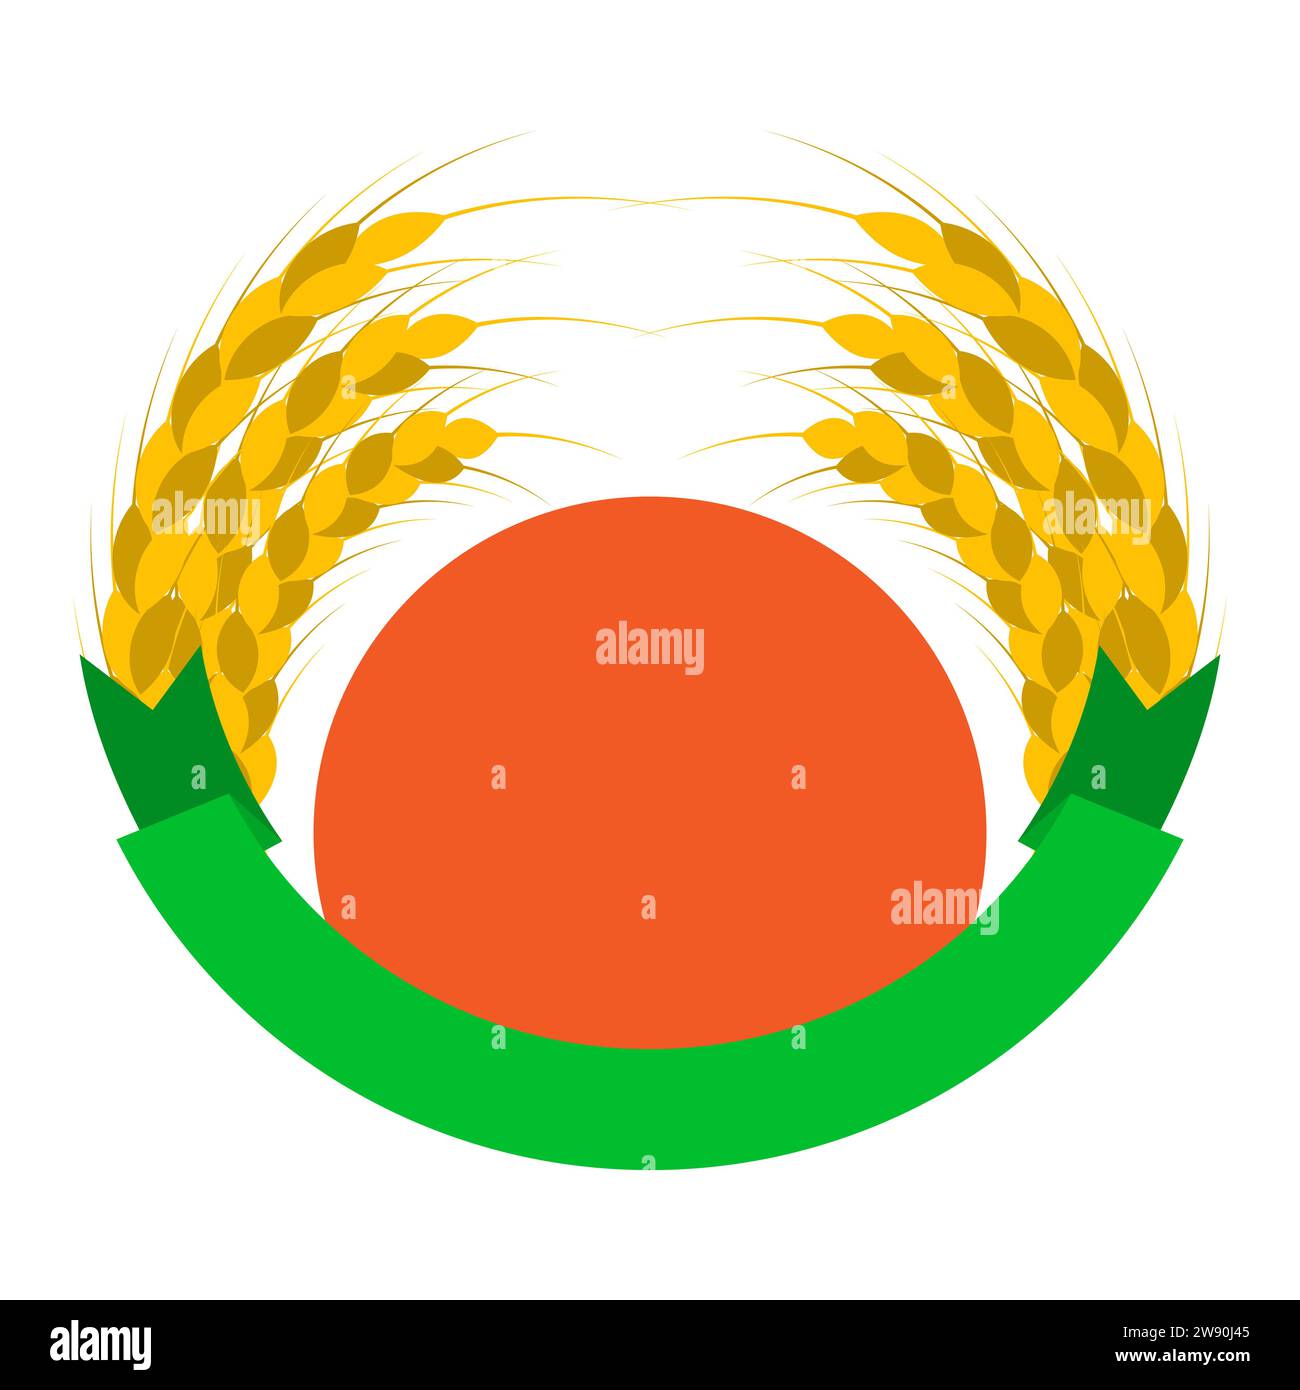 Wheat Ears Logo mit Sonne und Band. Runde Formen. Grüne, orange, goldene, gelbe Farben. Emblem, Symbol. Isolierte Vektordarstellung. Stock Vektor